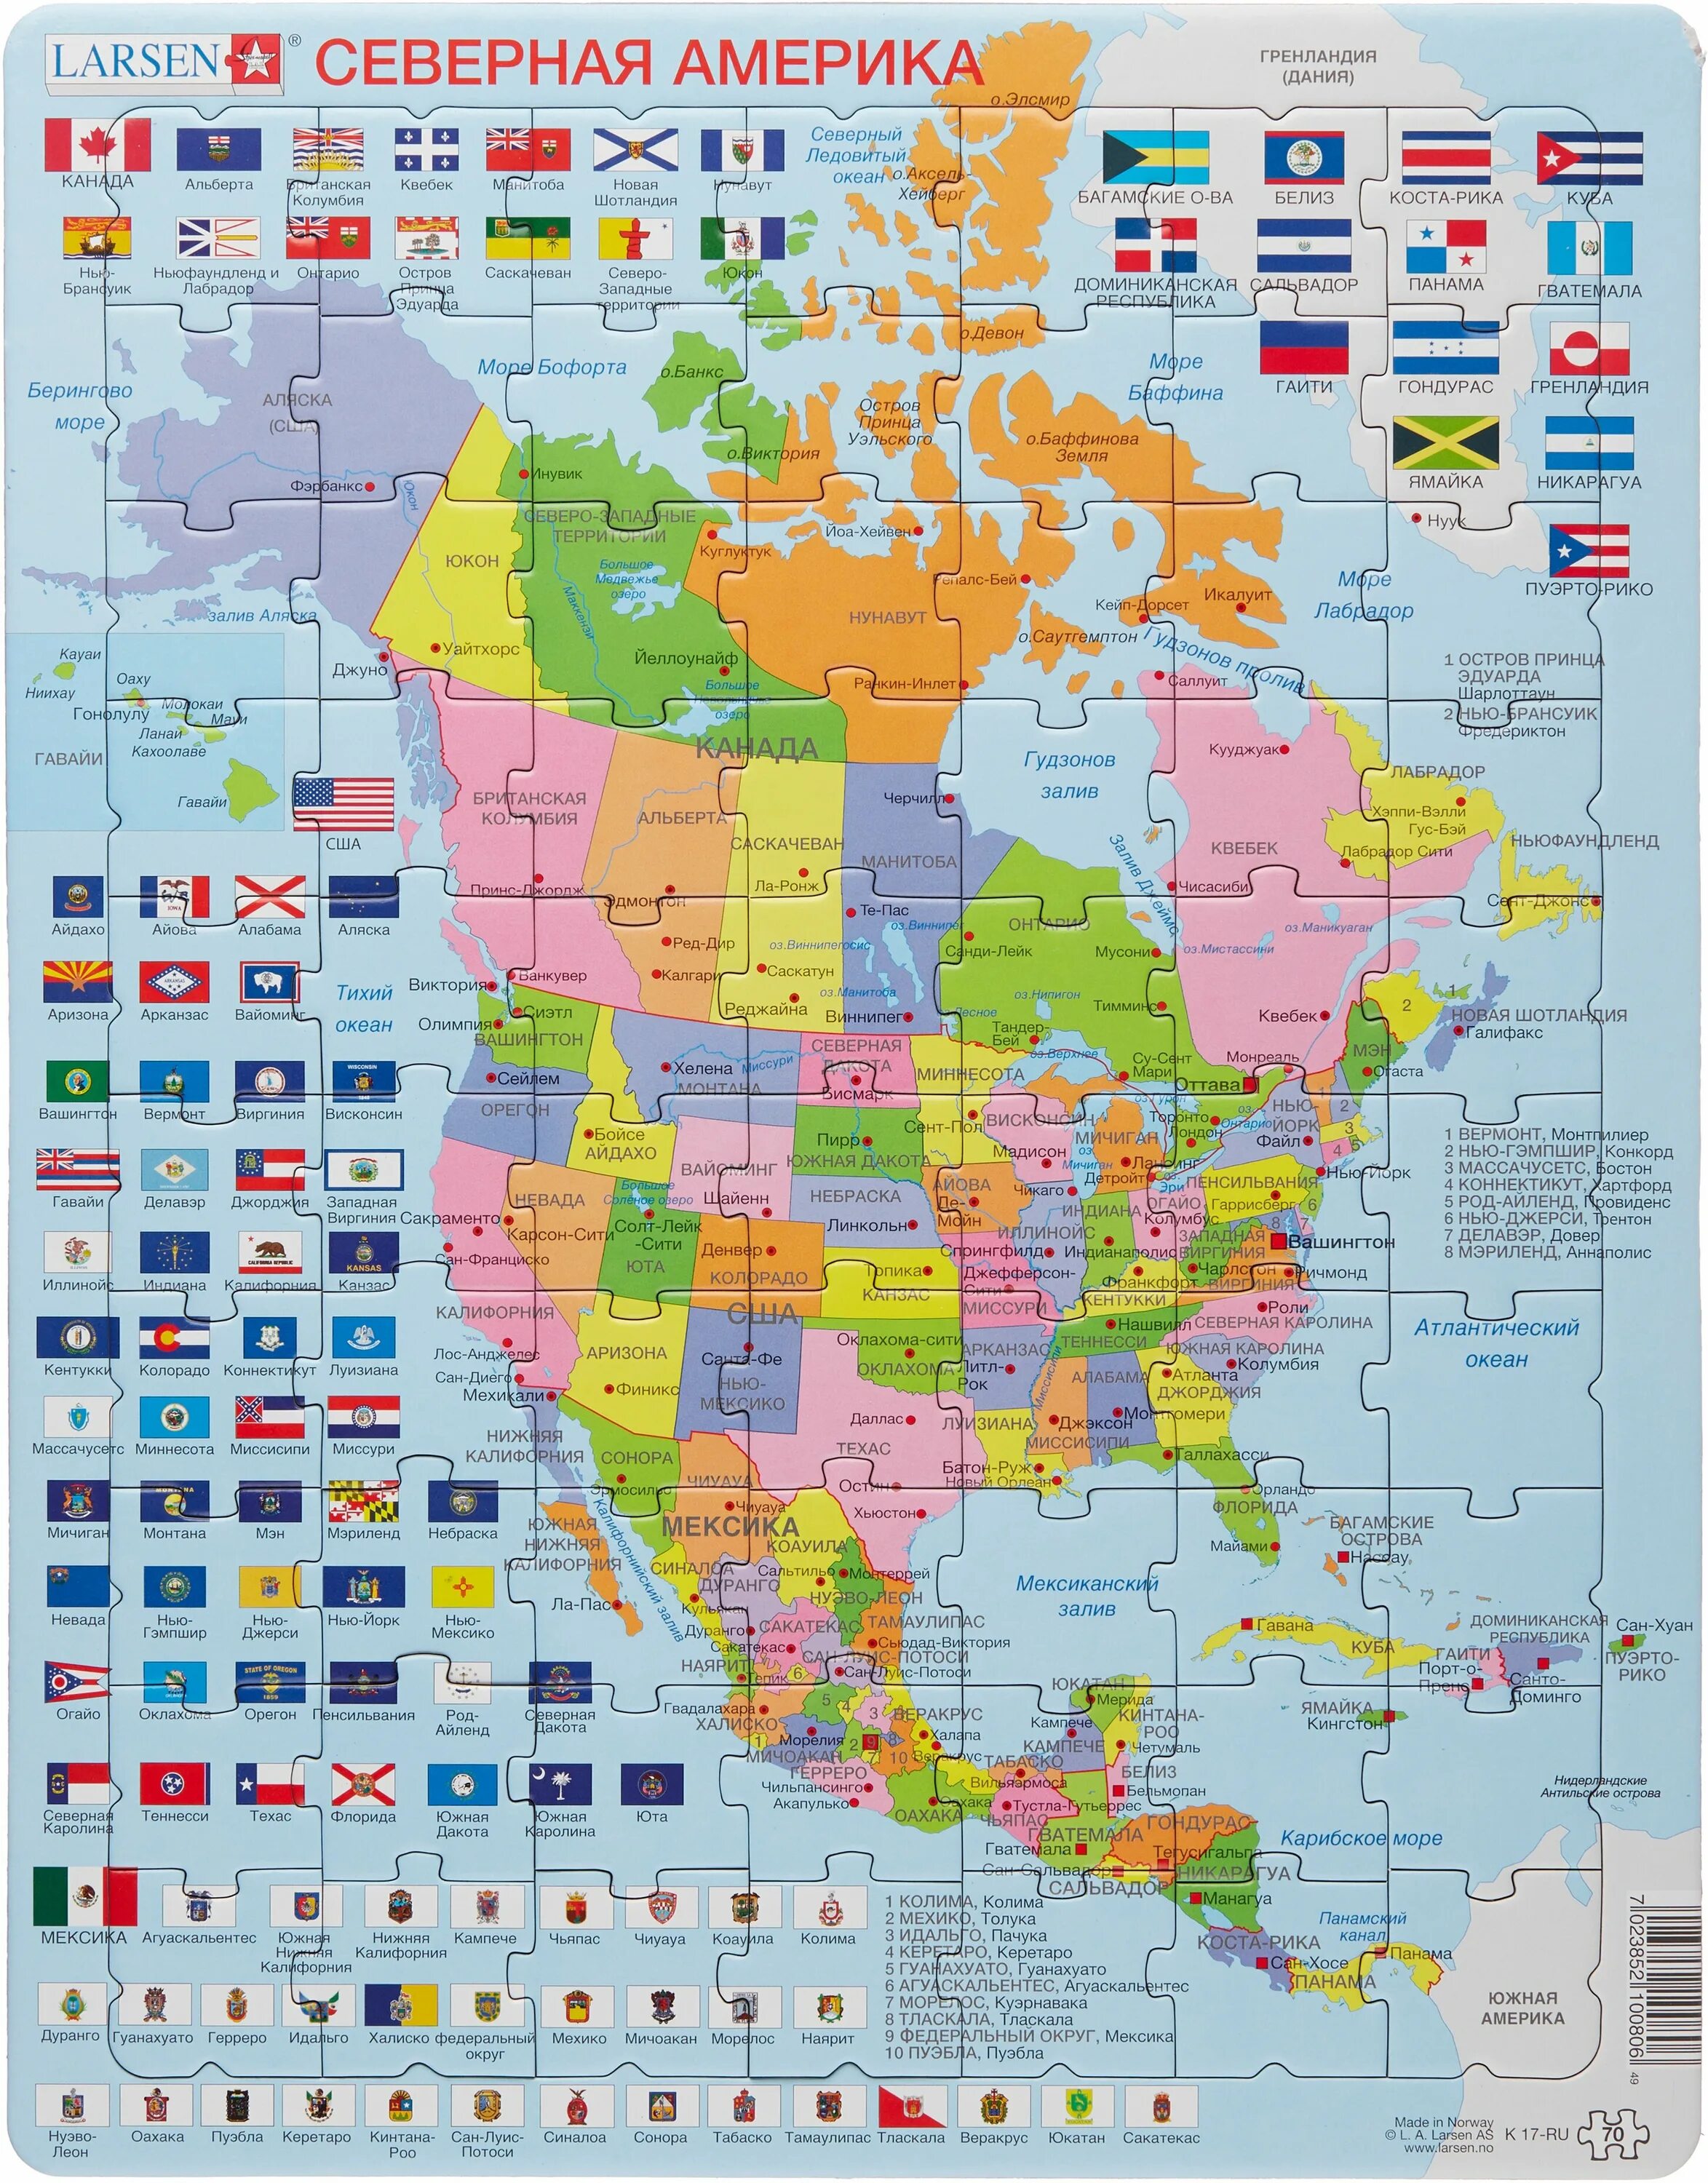 Название государства и название столицы северной америки. Северная Америка политическая карта на русском. Larsen пазл Северная Америка. Северная и Южная Америка политическая карта на русском. Карта Северной Америки Америки со странами.